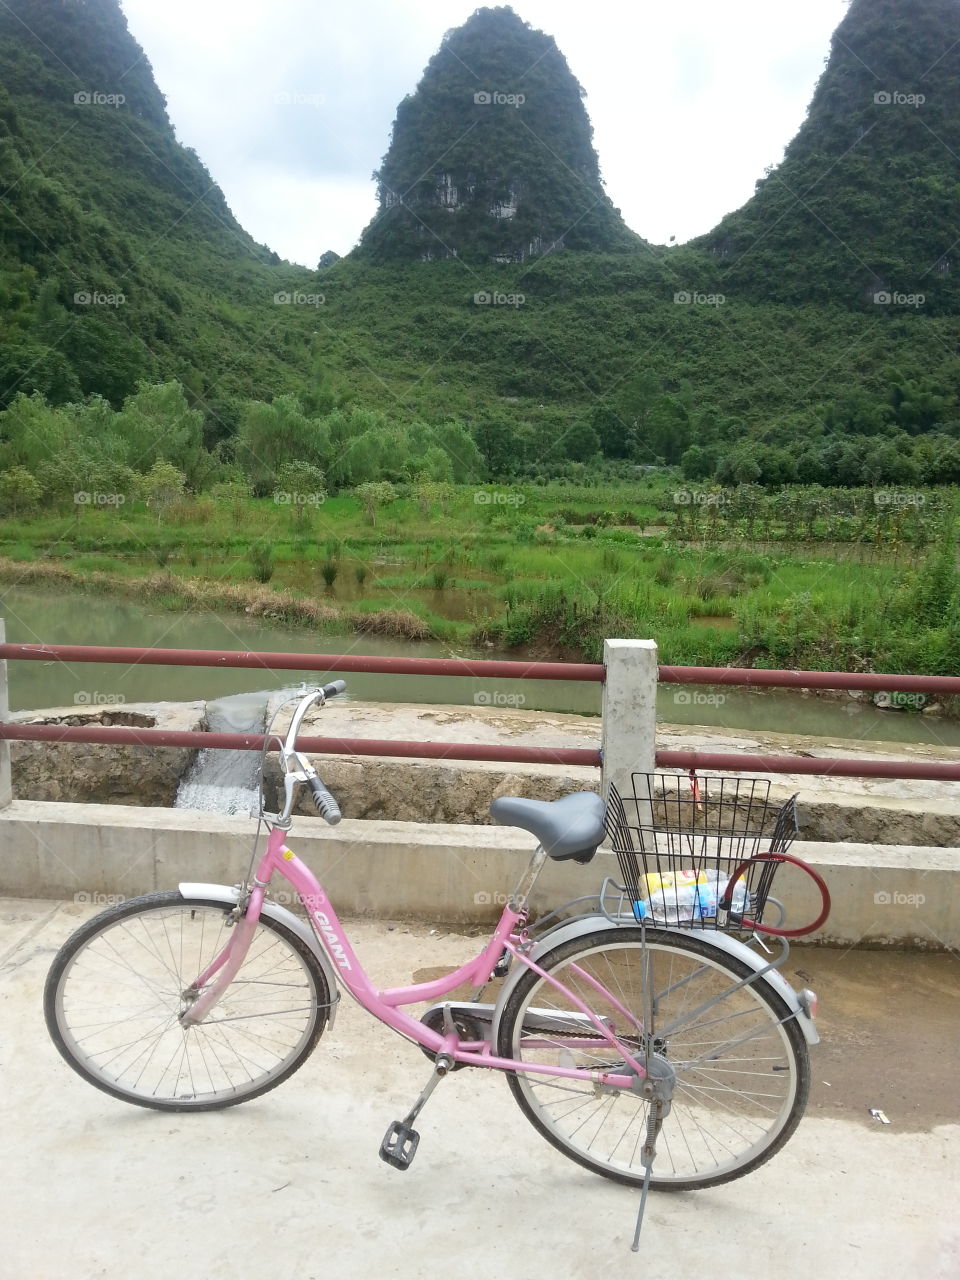 Biking in China mountains